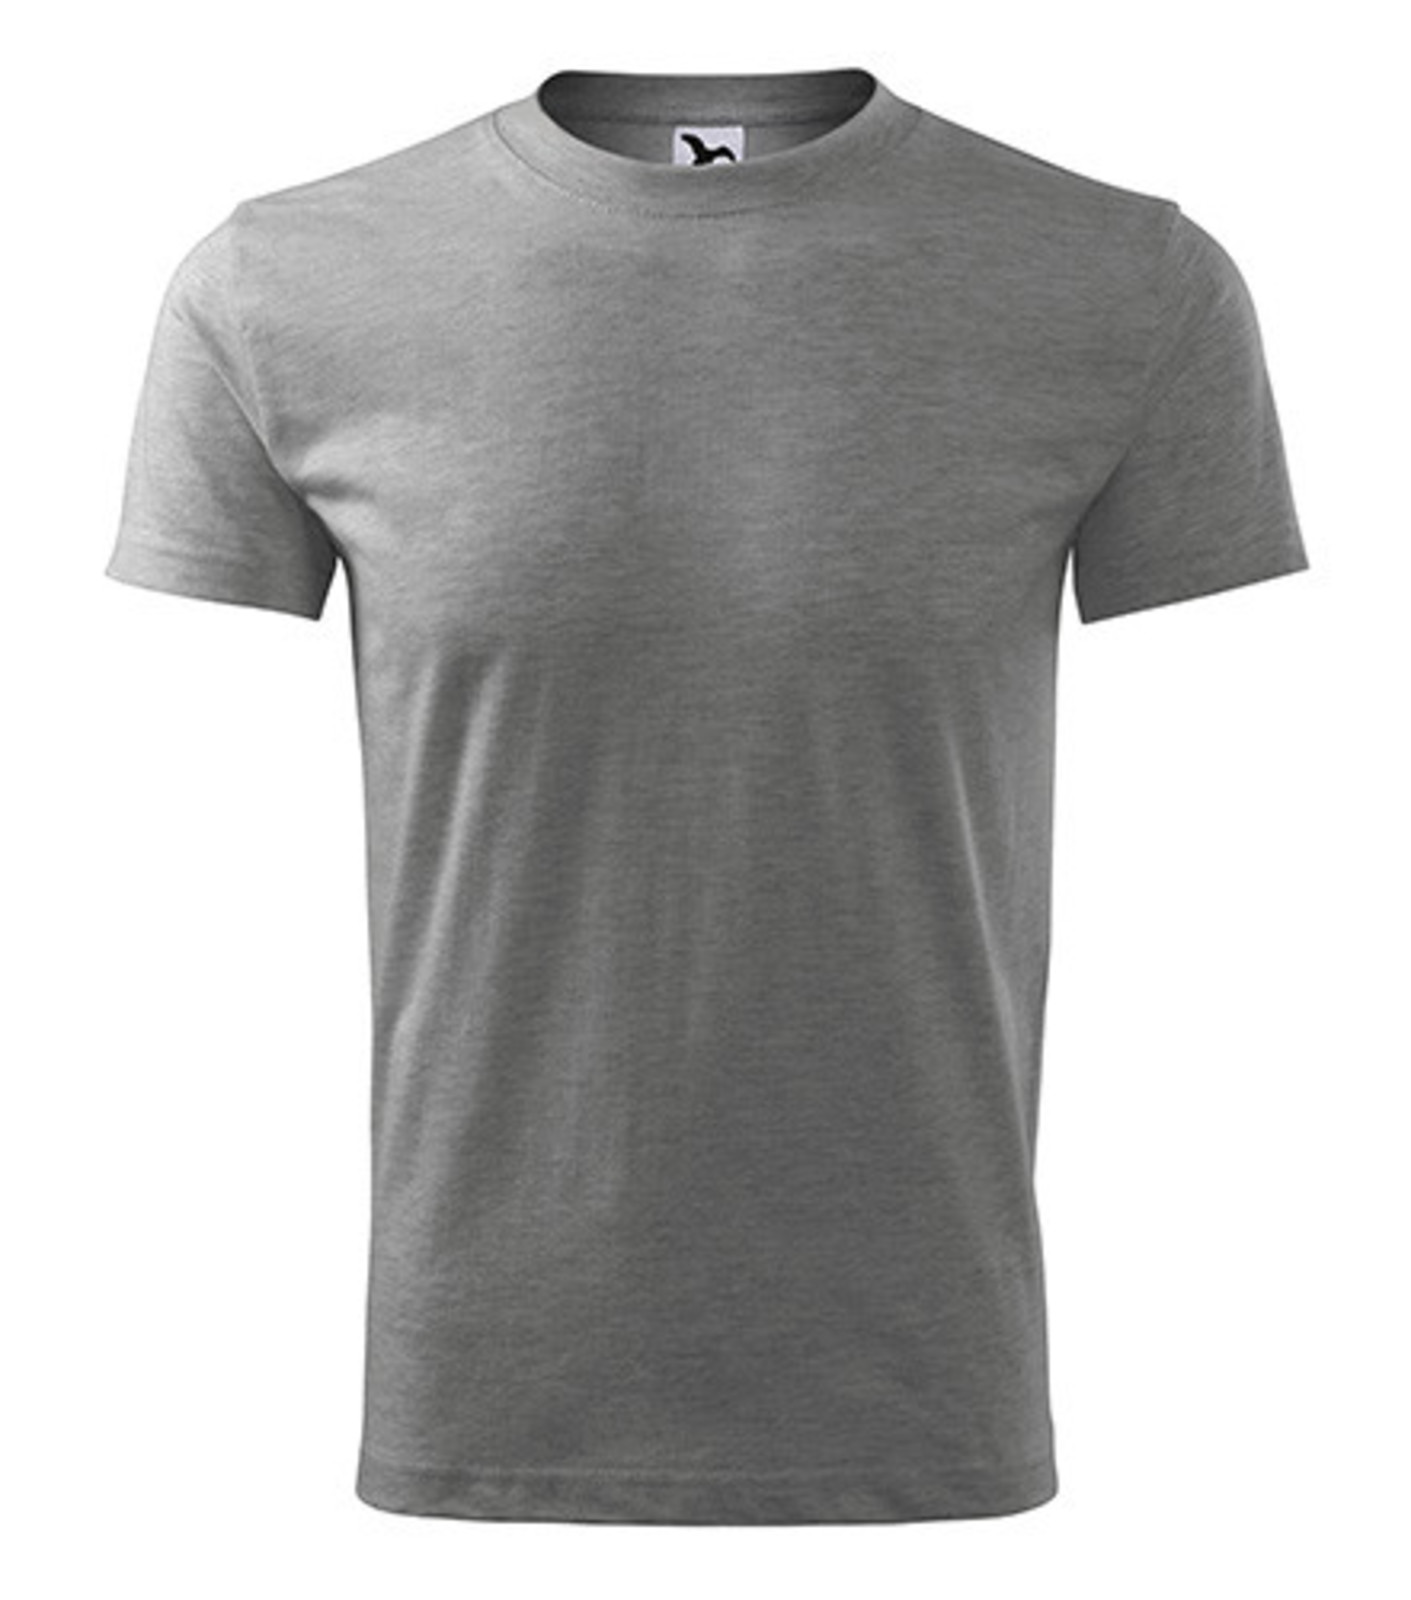 Pánske tričko Adler Classic New 132 - veľkosť: M, farba: tmavosivý melír